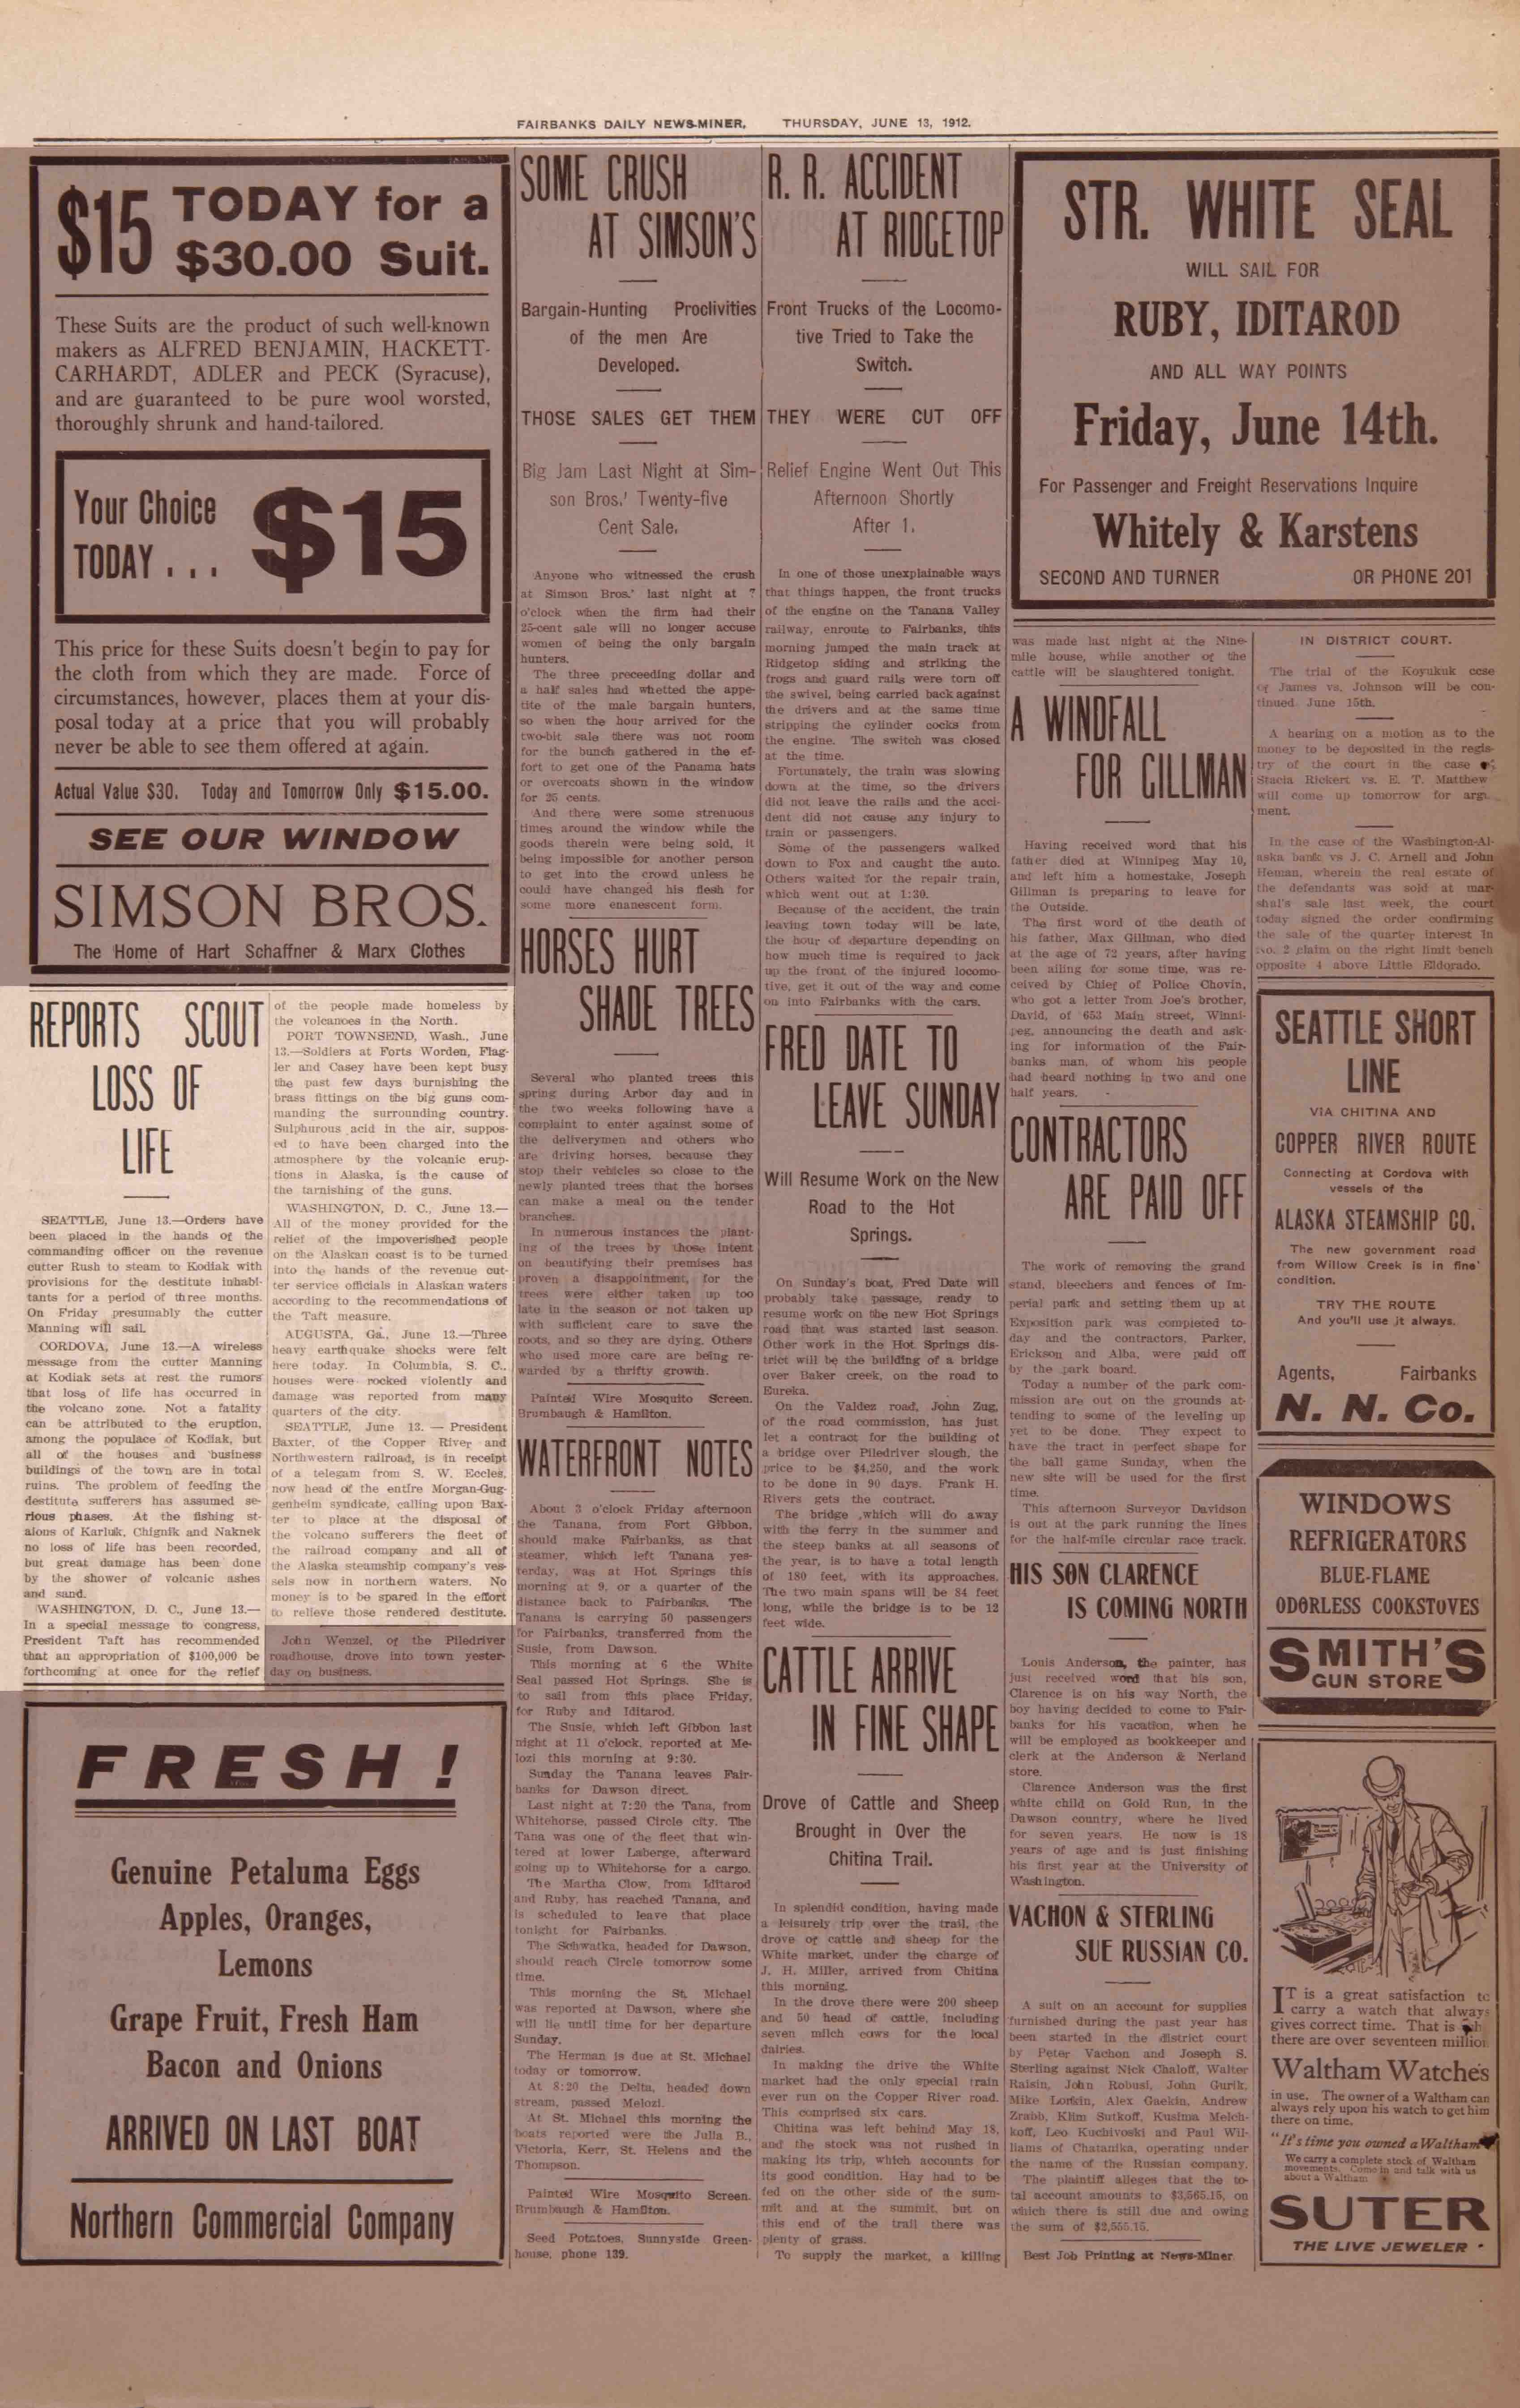 1912 June 13, Fairbanks Daily News-Miner (pg 4)